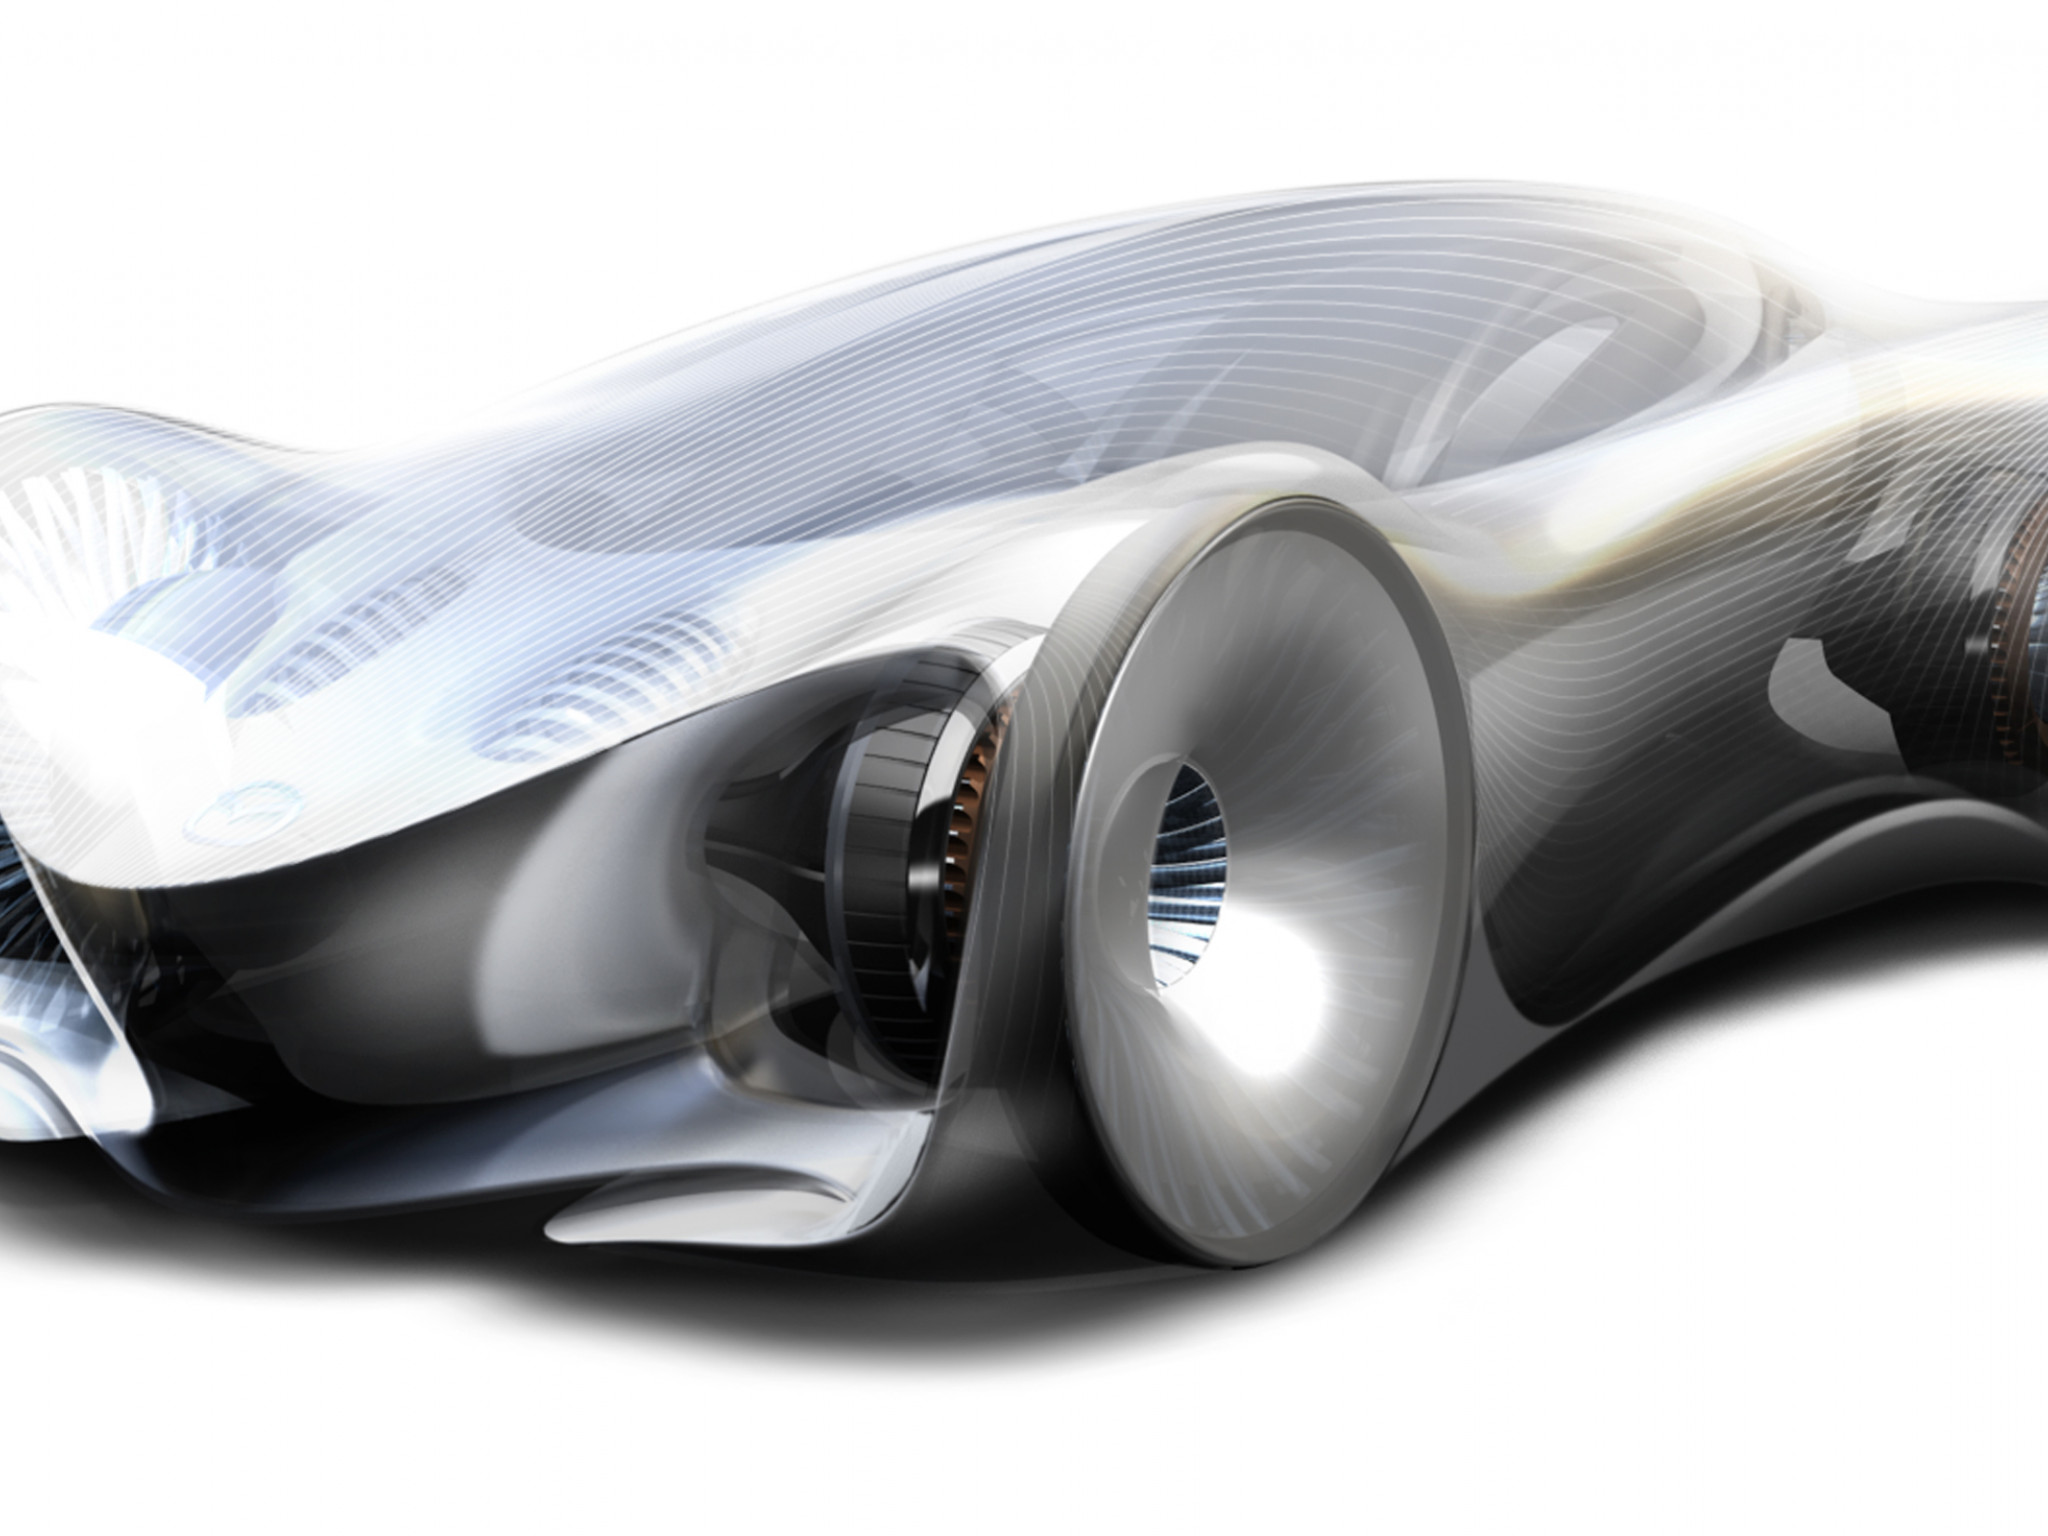 Mazda_Concept-Car.jpg